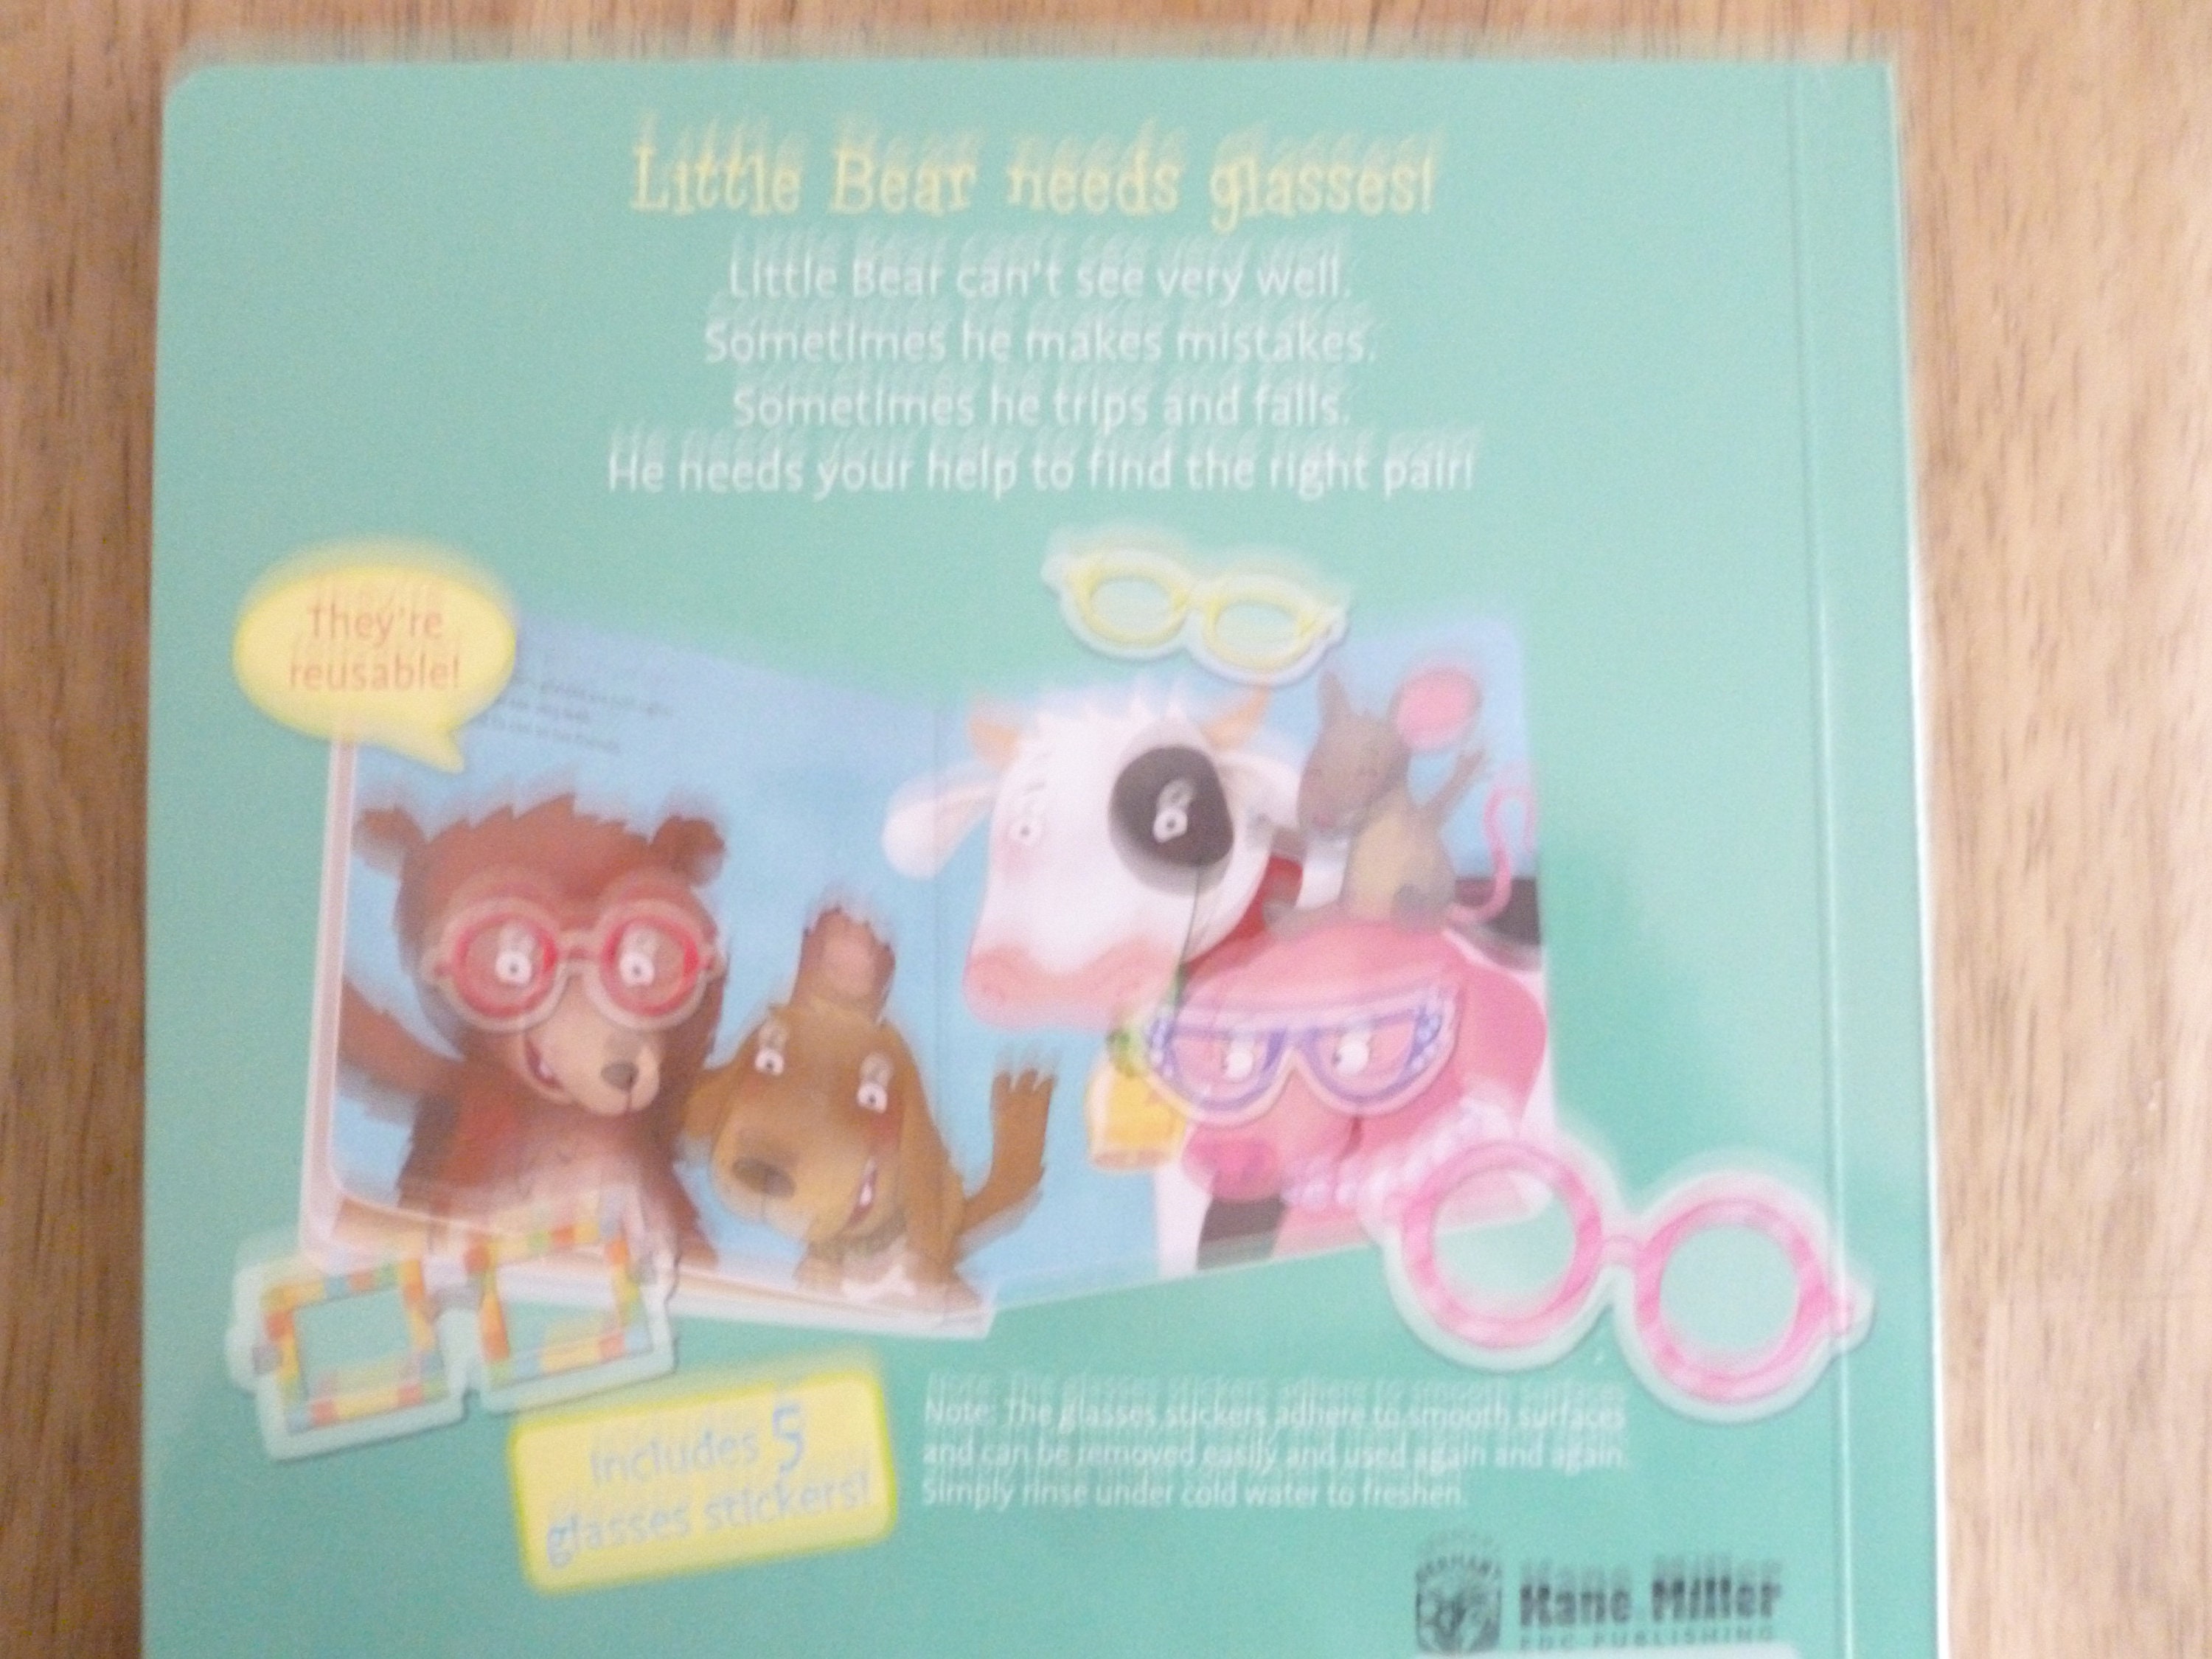 5 Reusable Sticker Books - Usborne Greatness for Littles! 